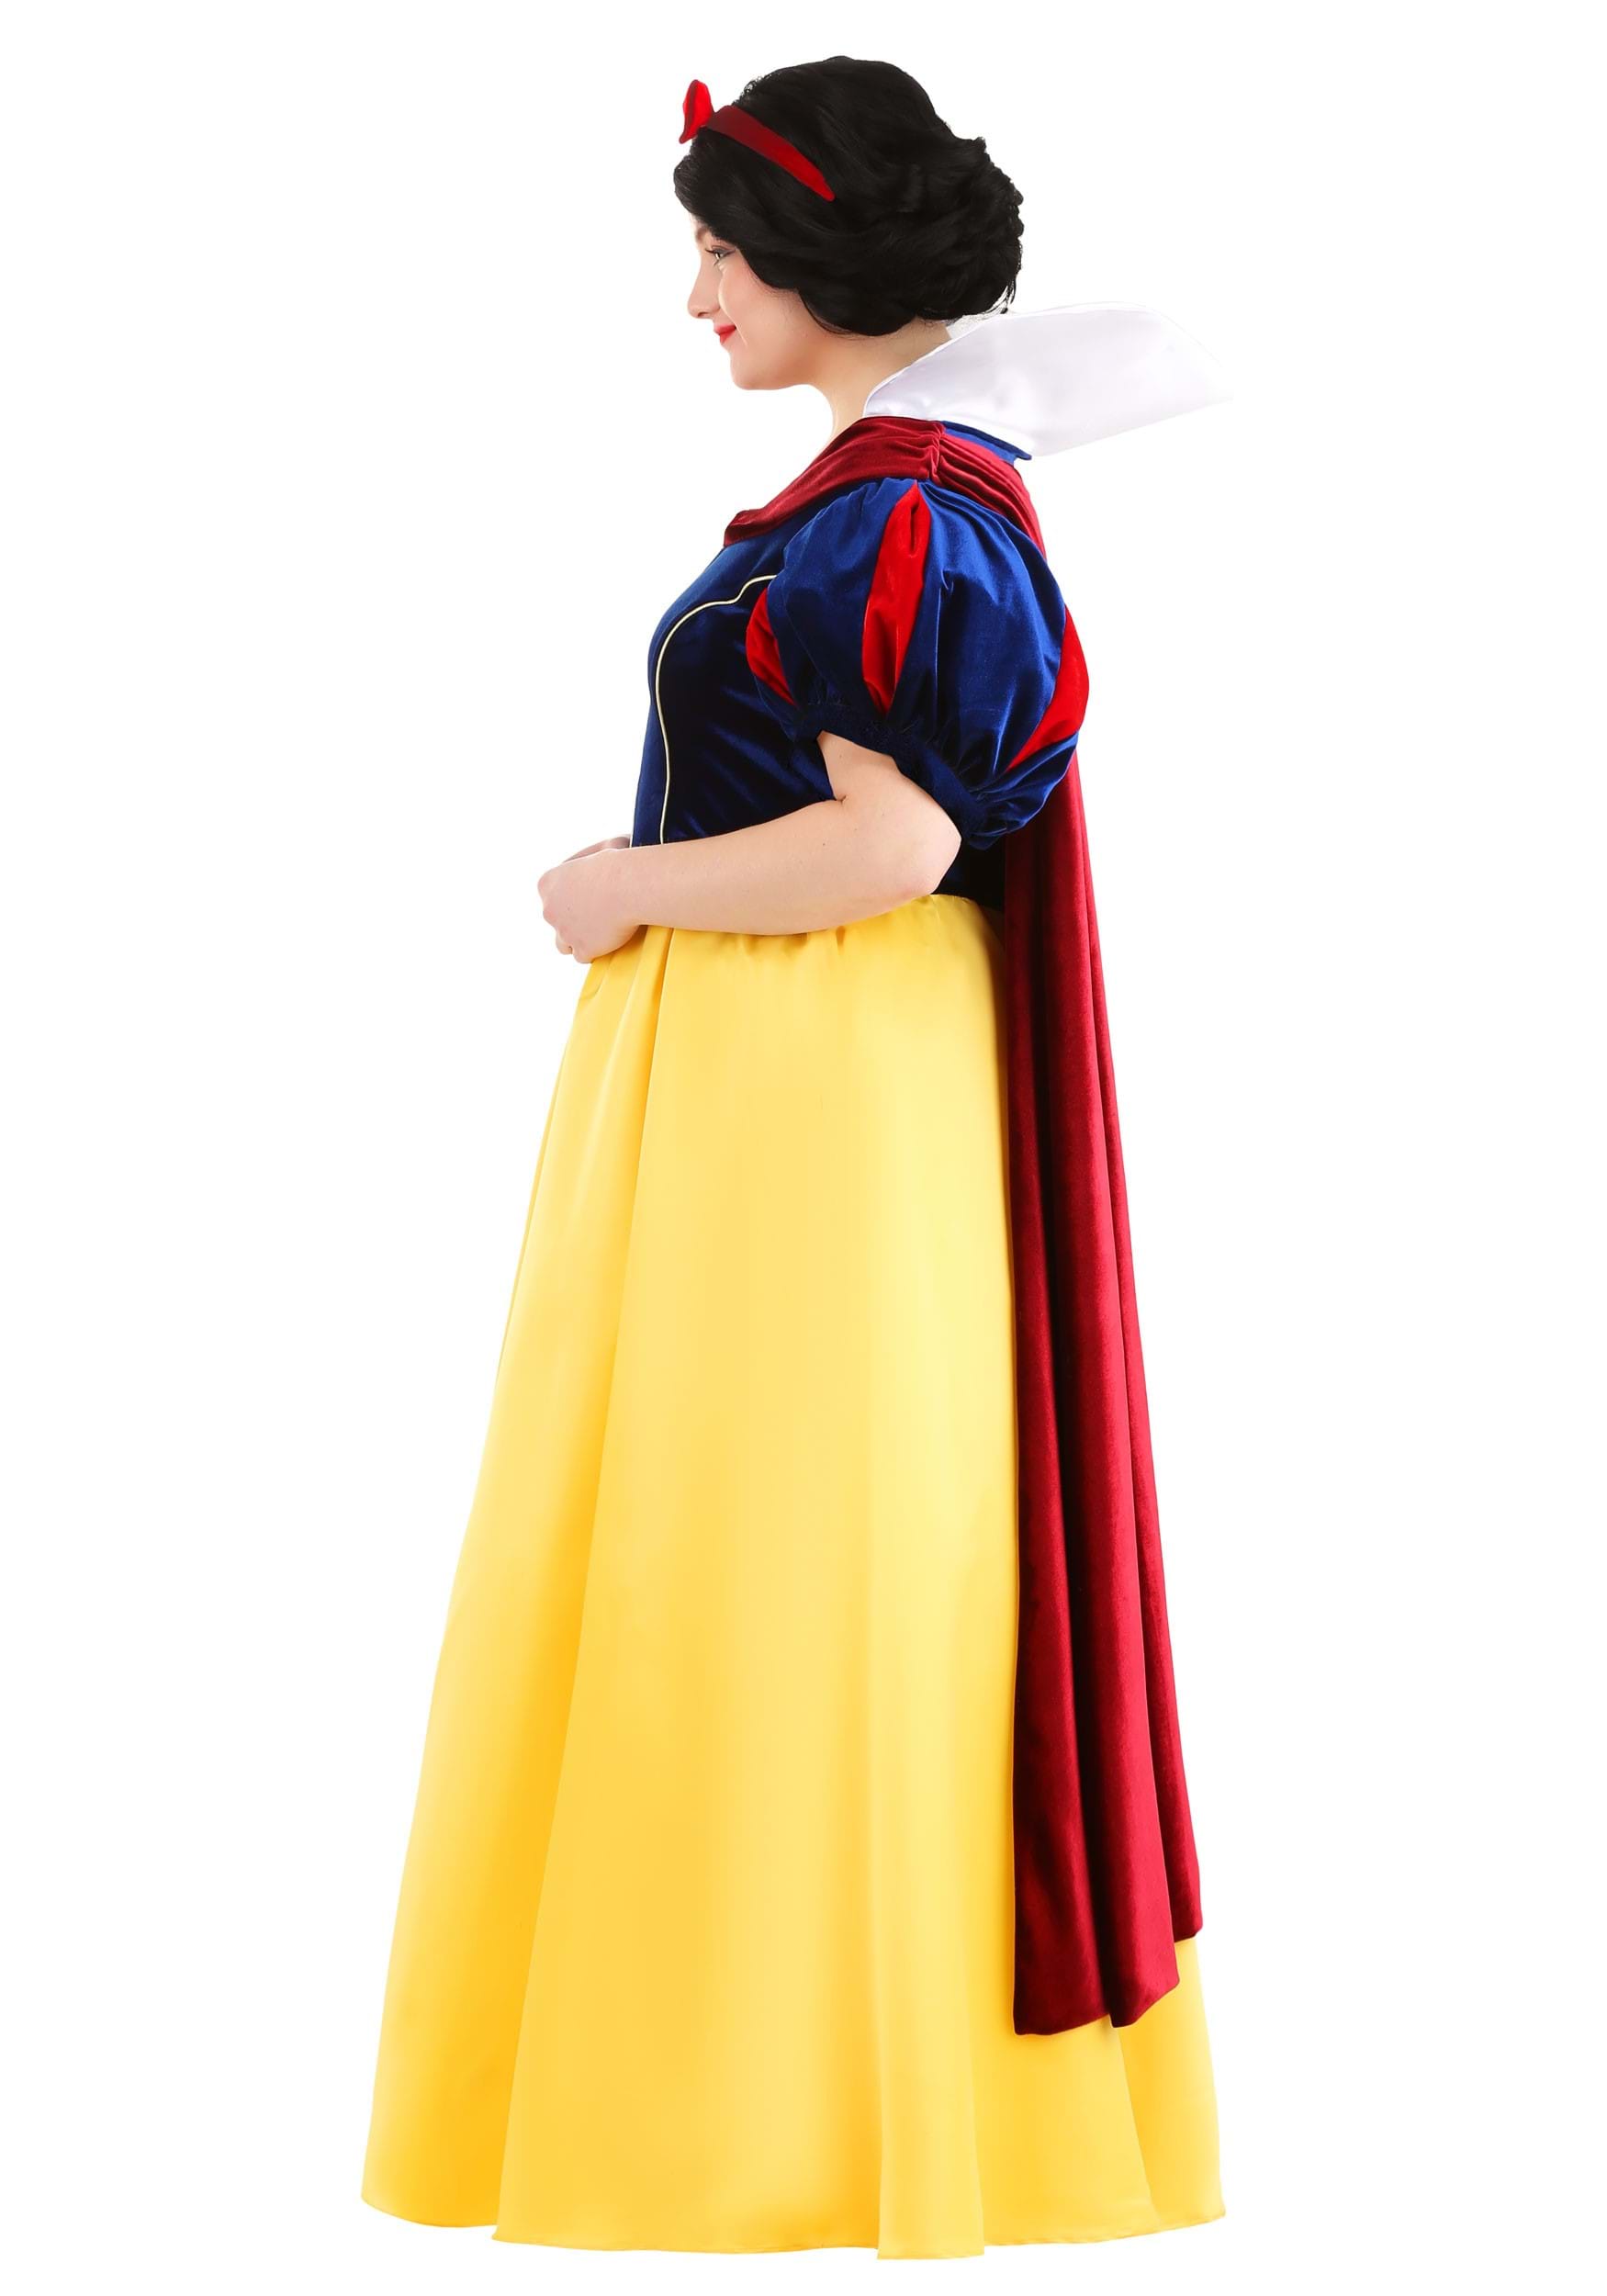 Plus Size Disney Snow White Costume For Women 0090